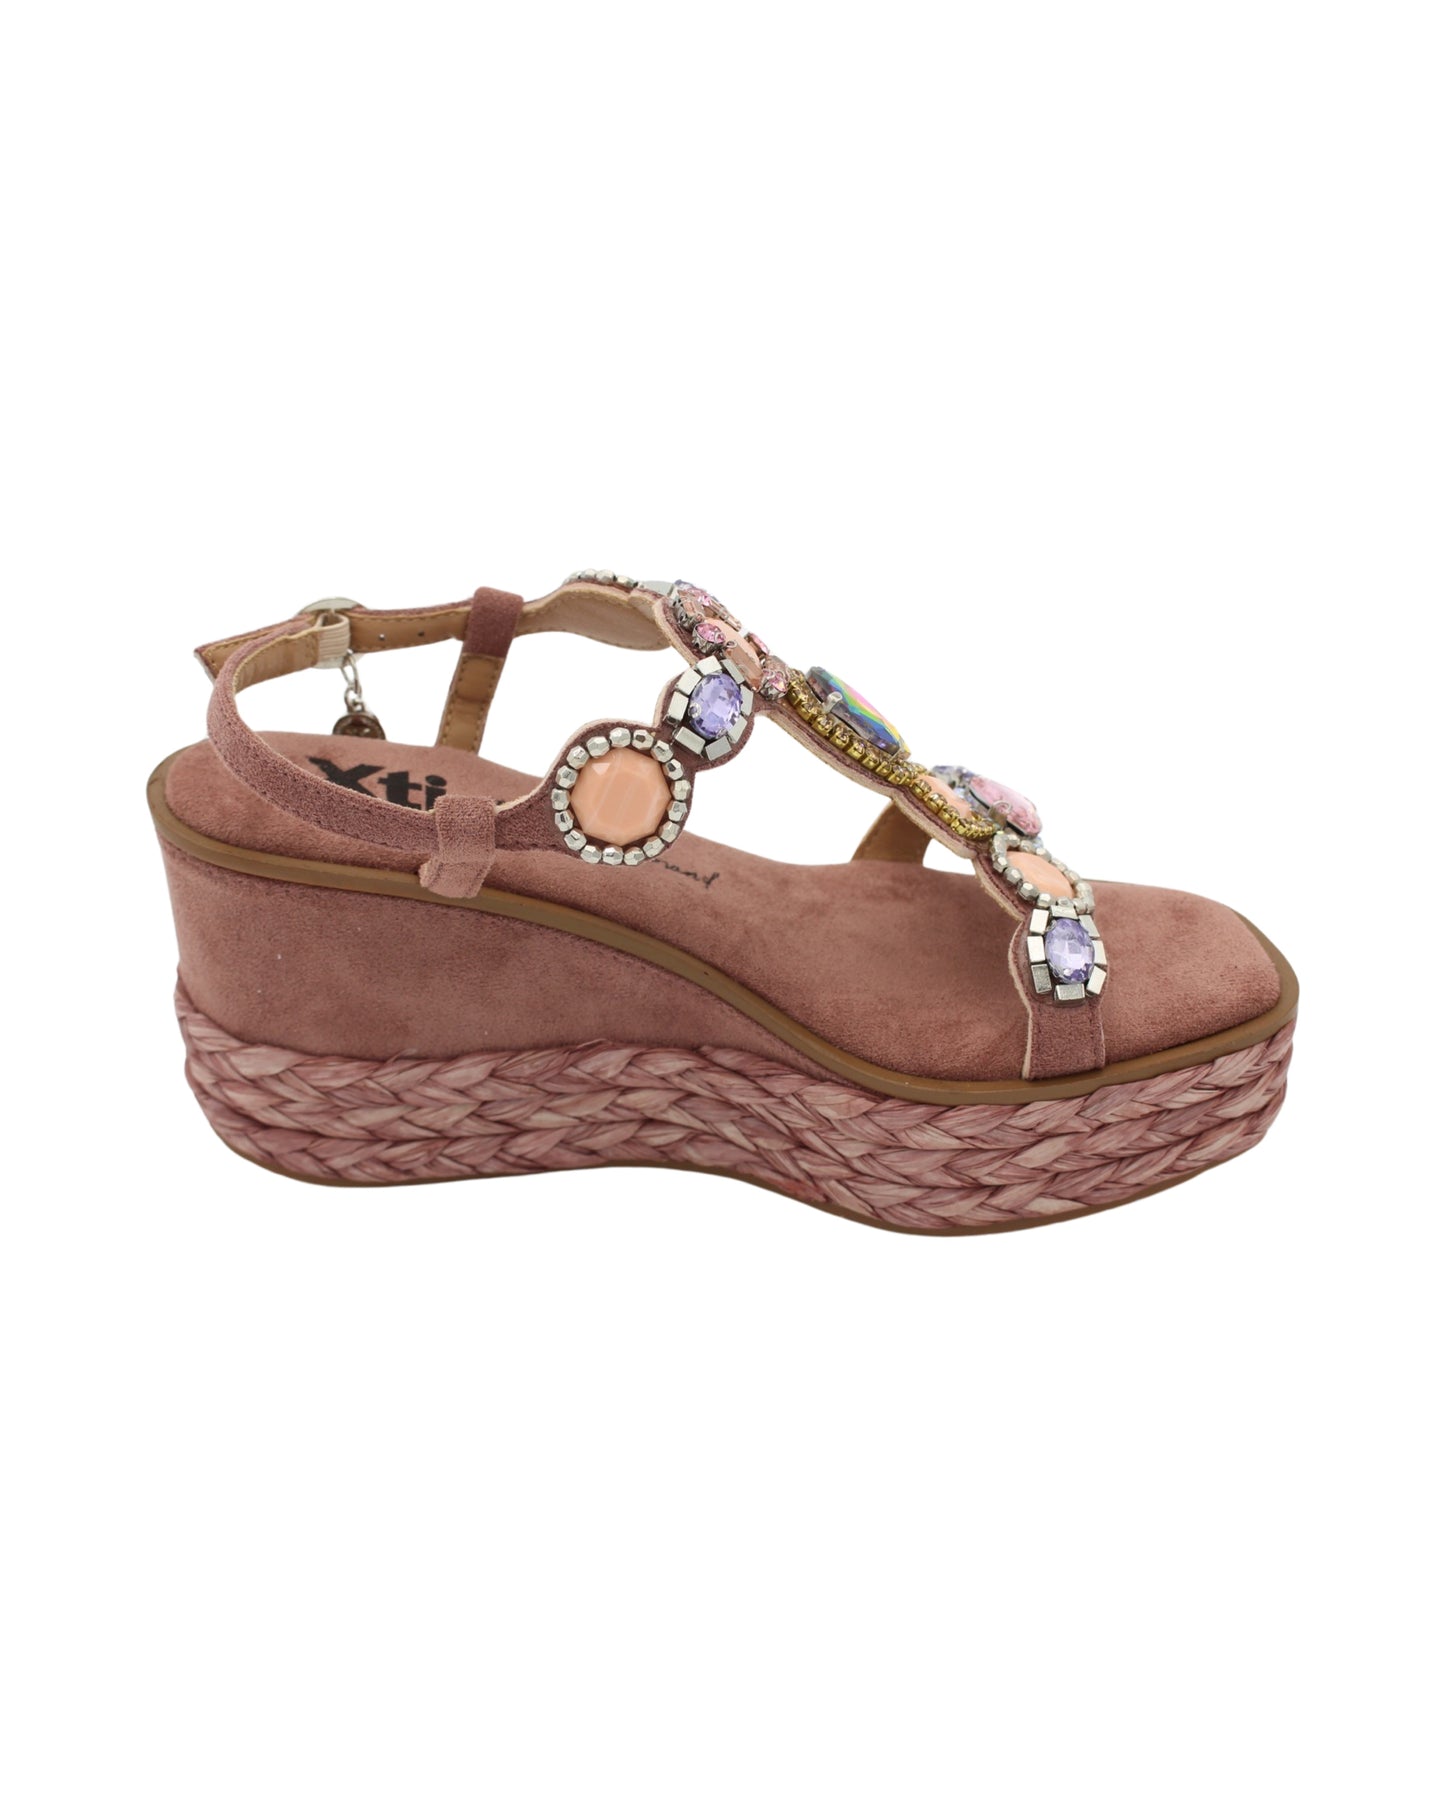 Xti - Ladies Shoes Sandals Pink (2238)